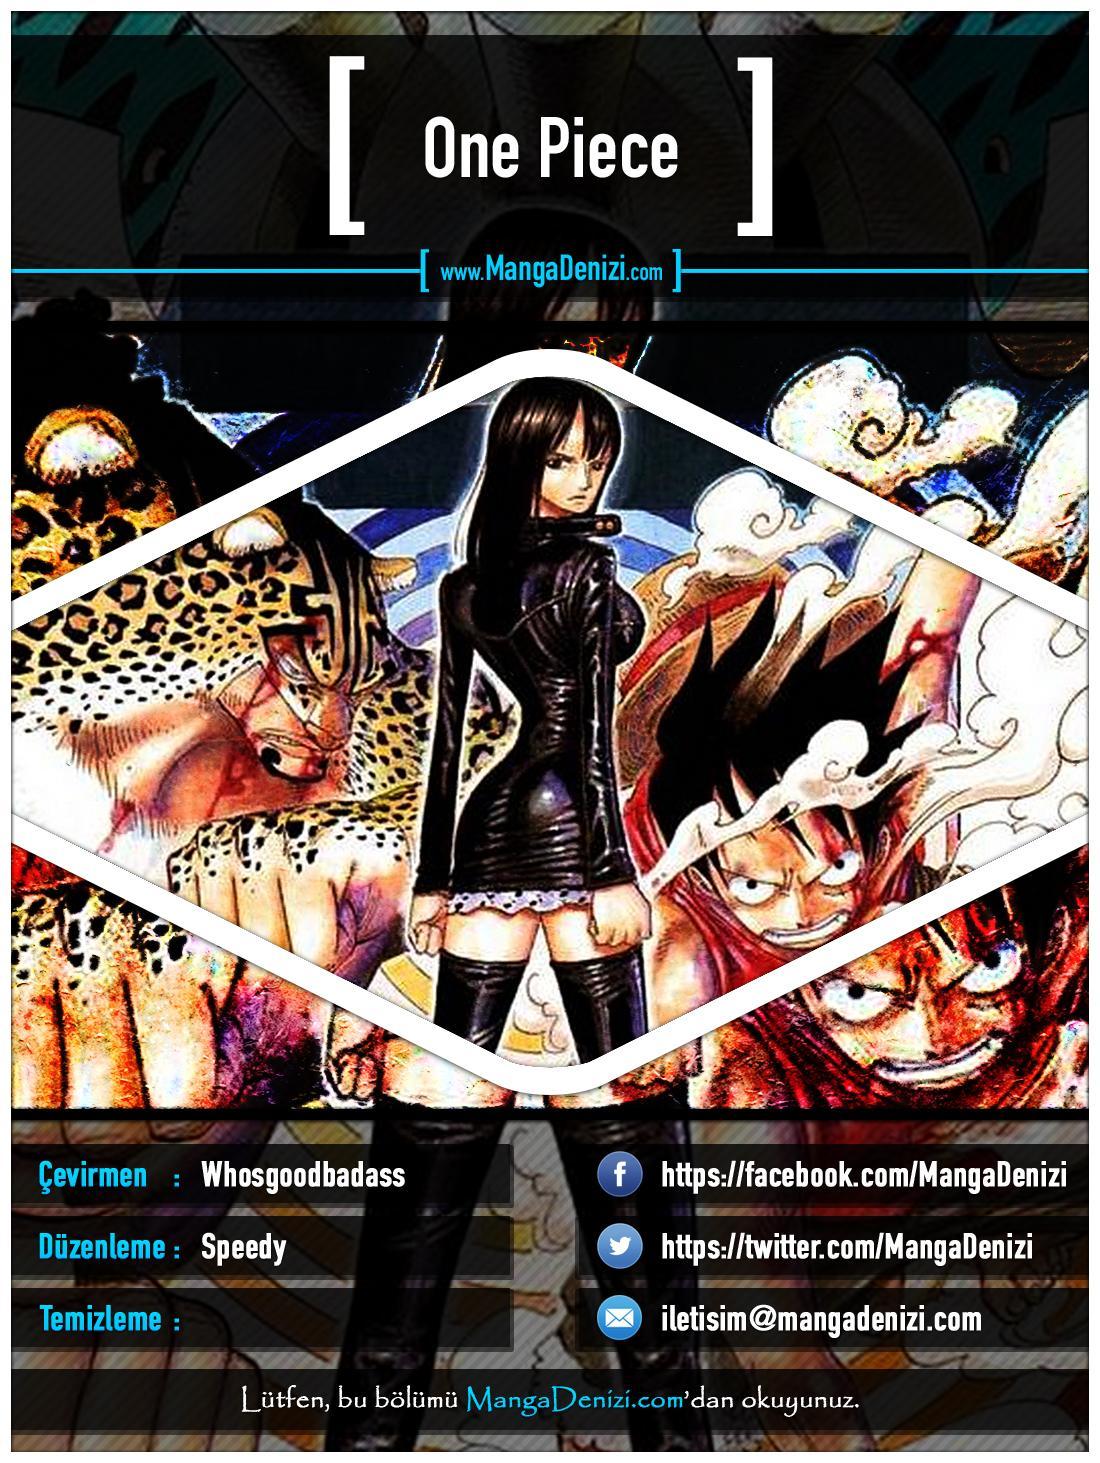 One Piece [Renkli] mangasının 0318 bölümünün 1. sayfasını okuyorsunuz.